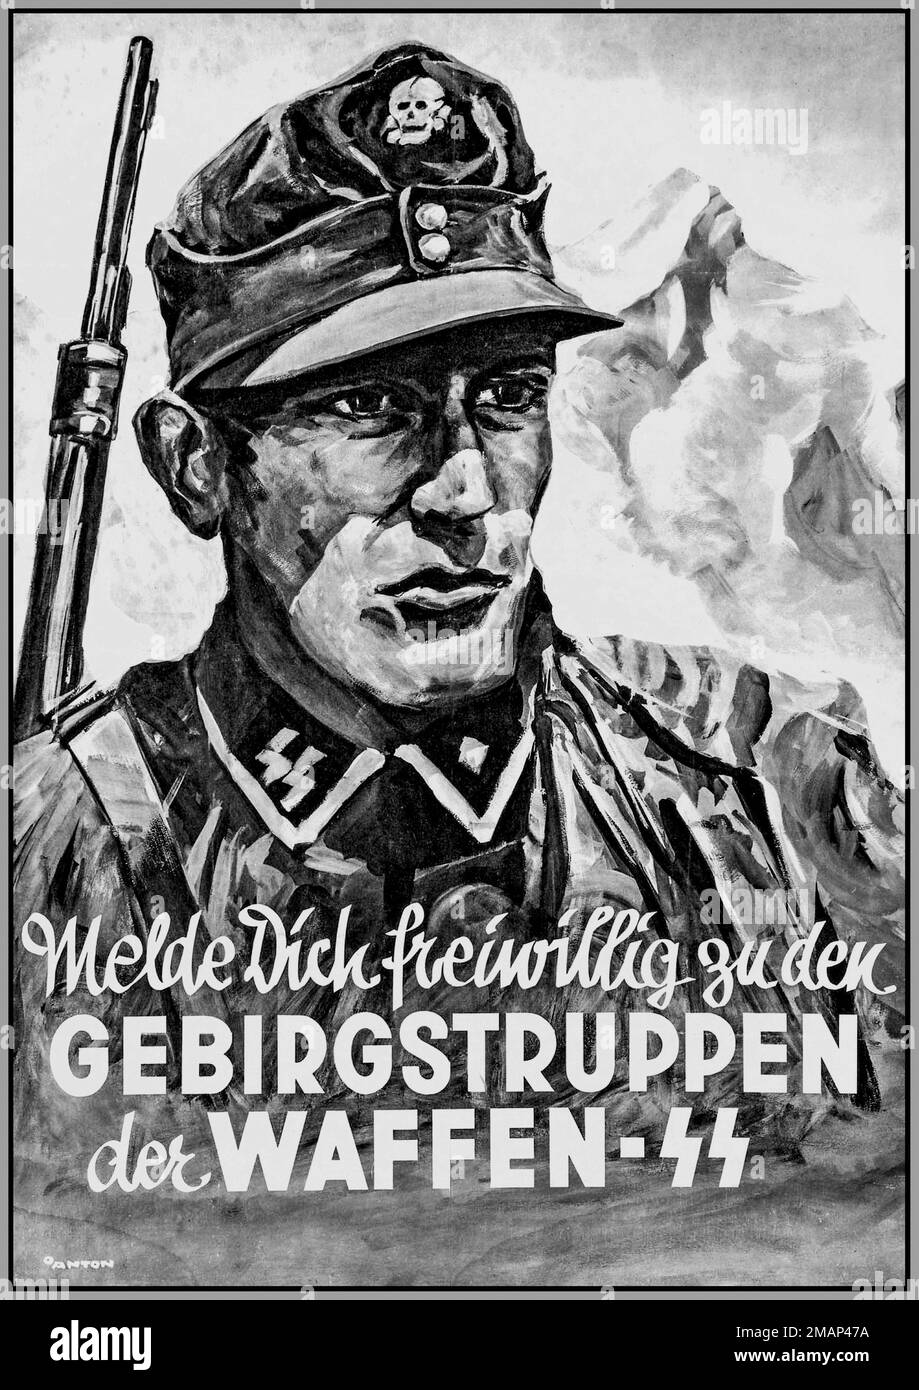 WAFFEN SS 1941 affiche de recrutement de propagande nazie pour les troupes de montagne du Waffen SS WW2 GEBIRGSTRUPPEN Der WAFFEN SS Seconde Guerre mondiale Banque D'Images